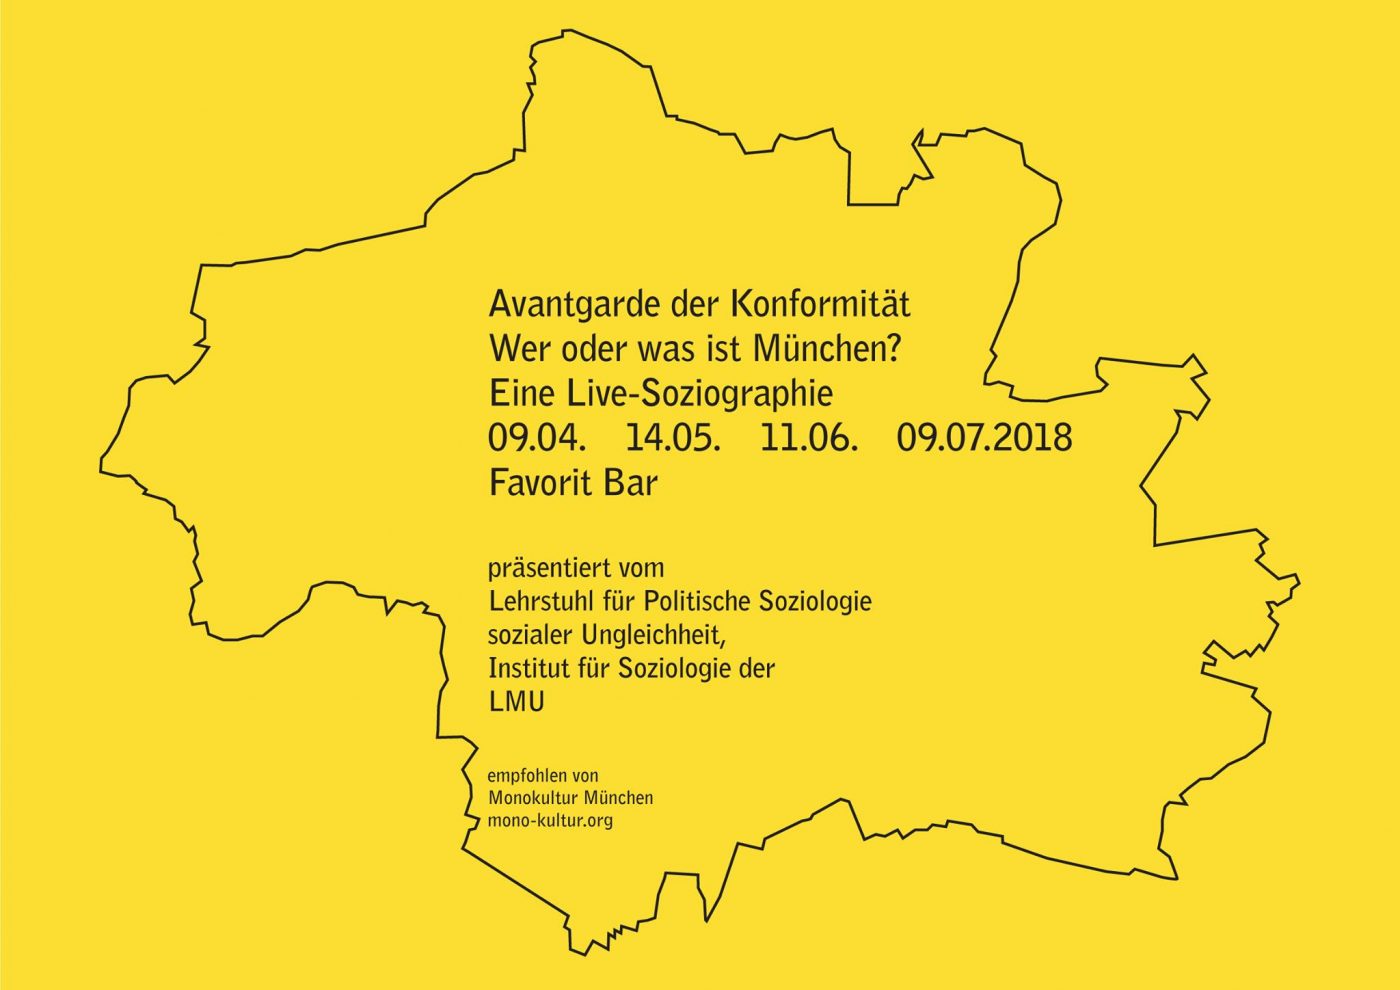 Avantgarde der Konformität - Veranstaltungseinladung - Stadtkarte von München